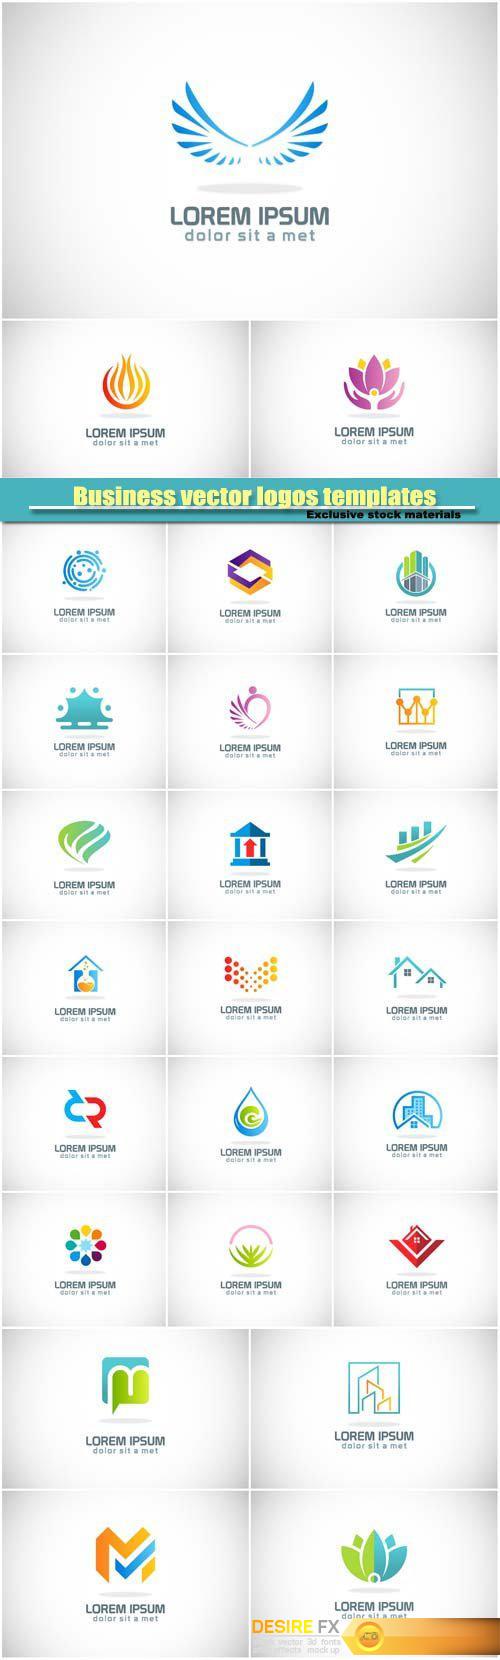 Business vector logos templates, creative figure icon #4